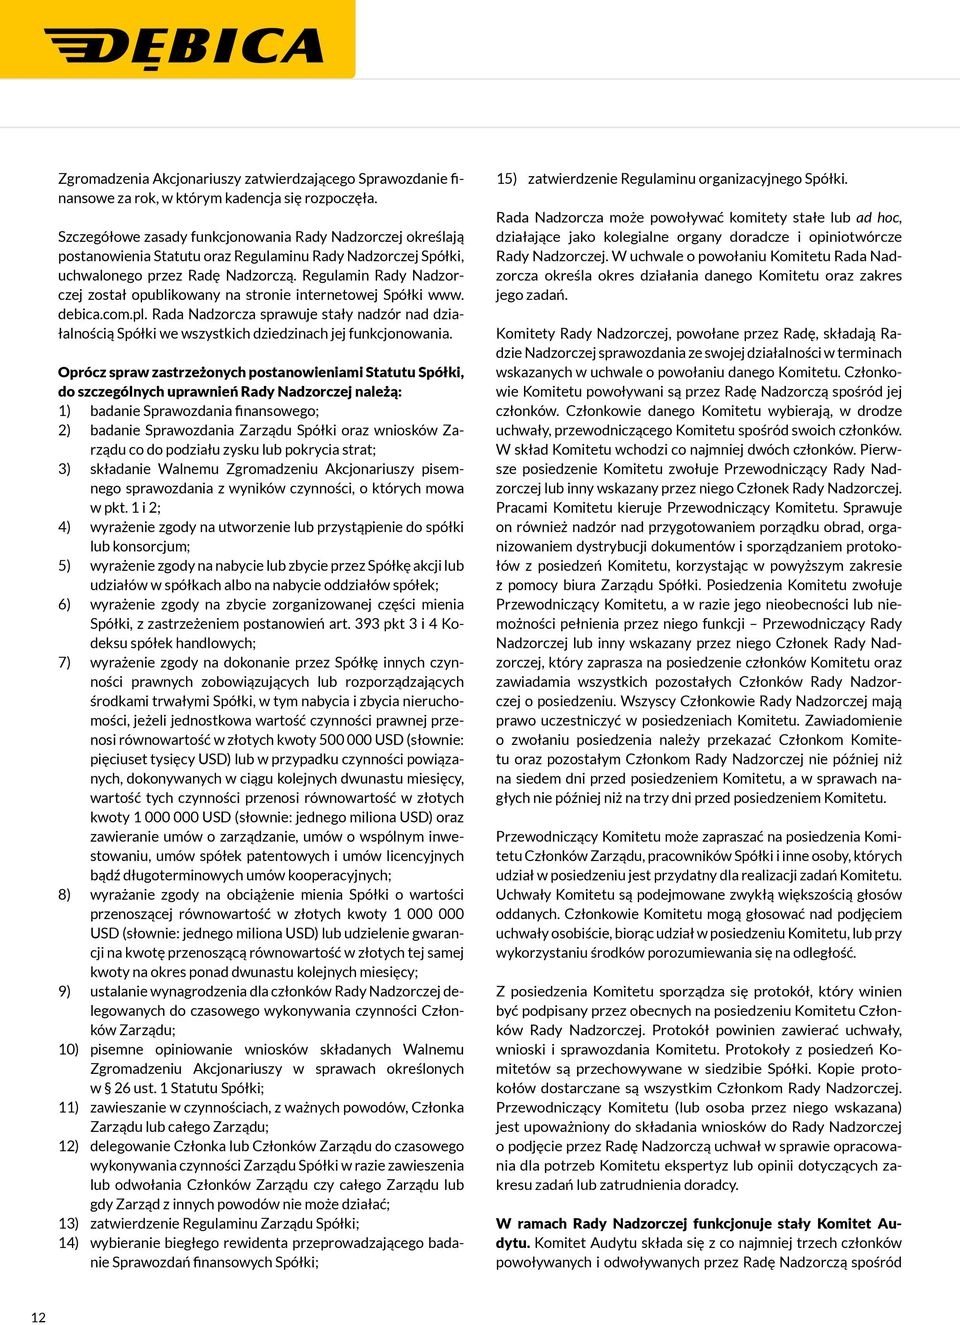 Regulamin Rady Nadzorczej został opublikowany na stronie internetowej Spółki www. debica.com.pl.